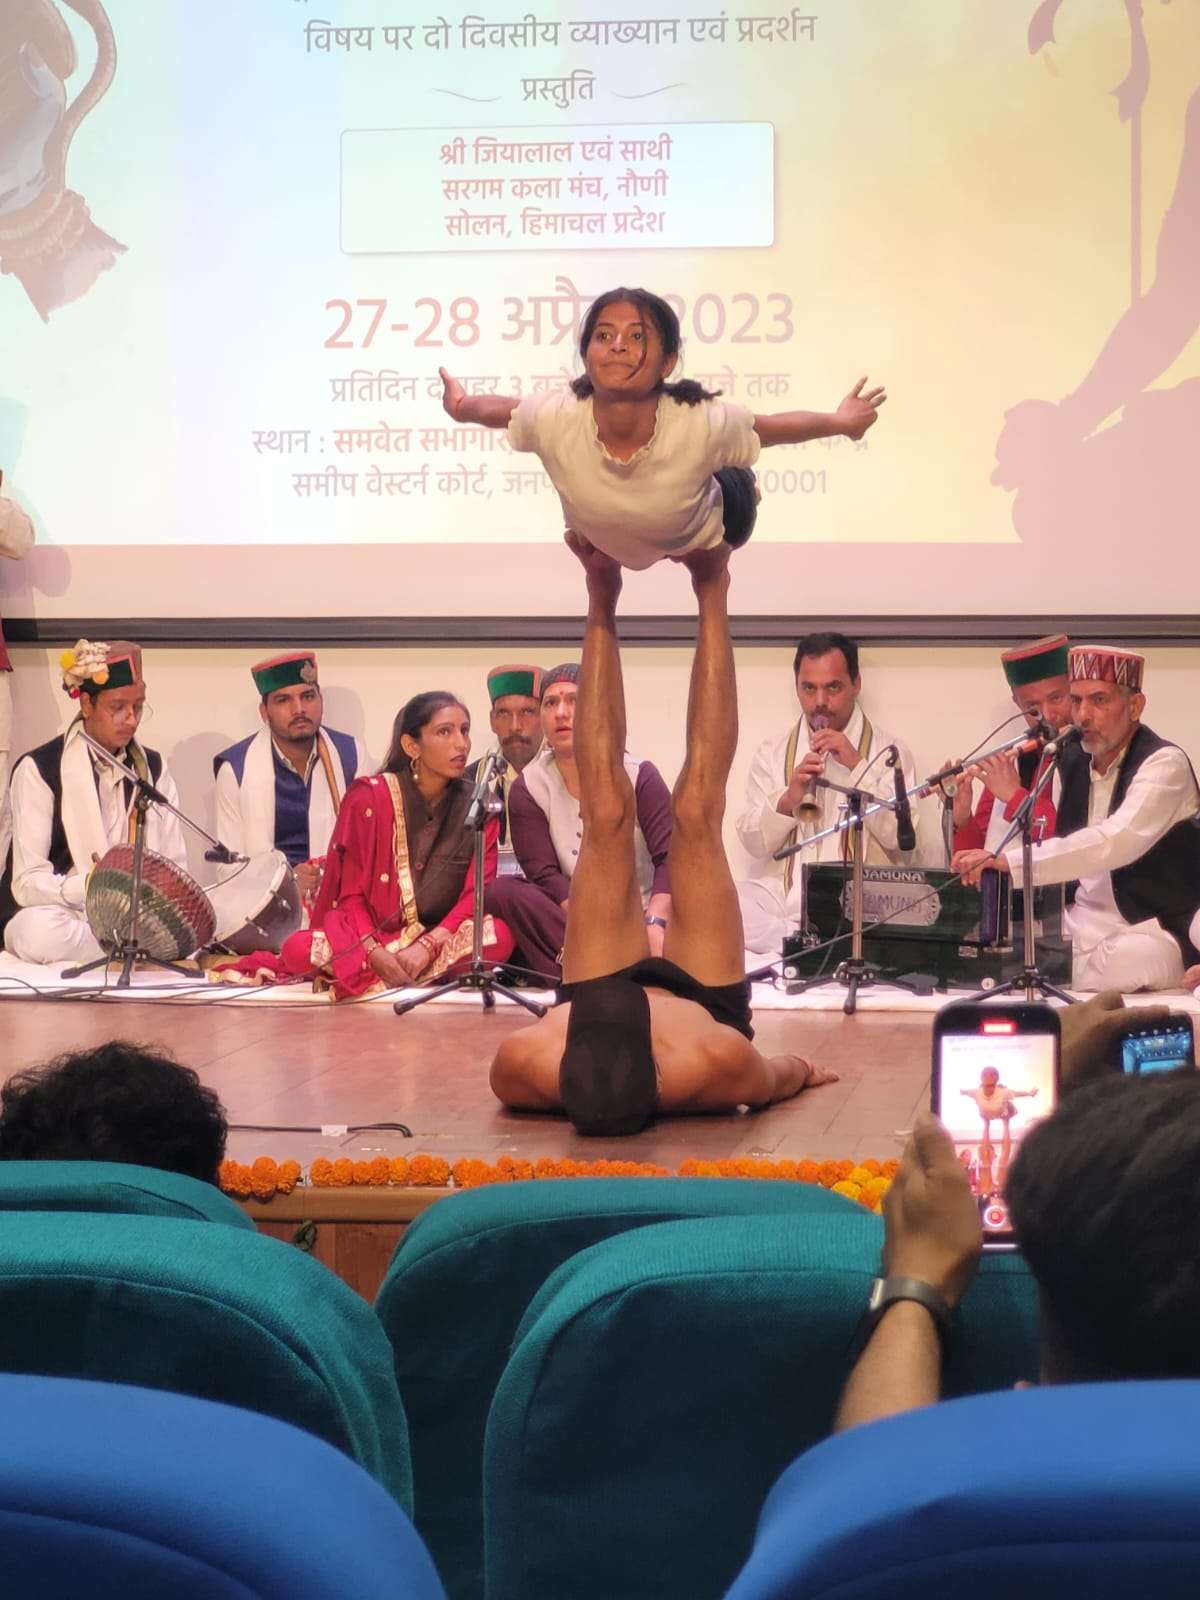 जीया लाल ठाकुर व सरगम कला मंच सोलन के कलाकारों ने शोधकर्ताओं के लिए इन्दिरा गांधी राष्ट्रीय कला अनुसंधान केंद्र दिल्ली में किया विशुद्ध विरासती संस्कृति का प्रदर्शन